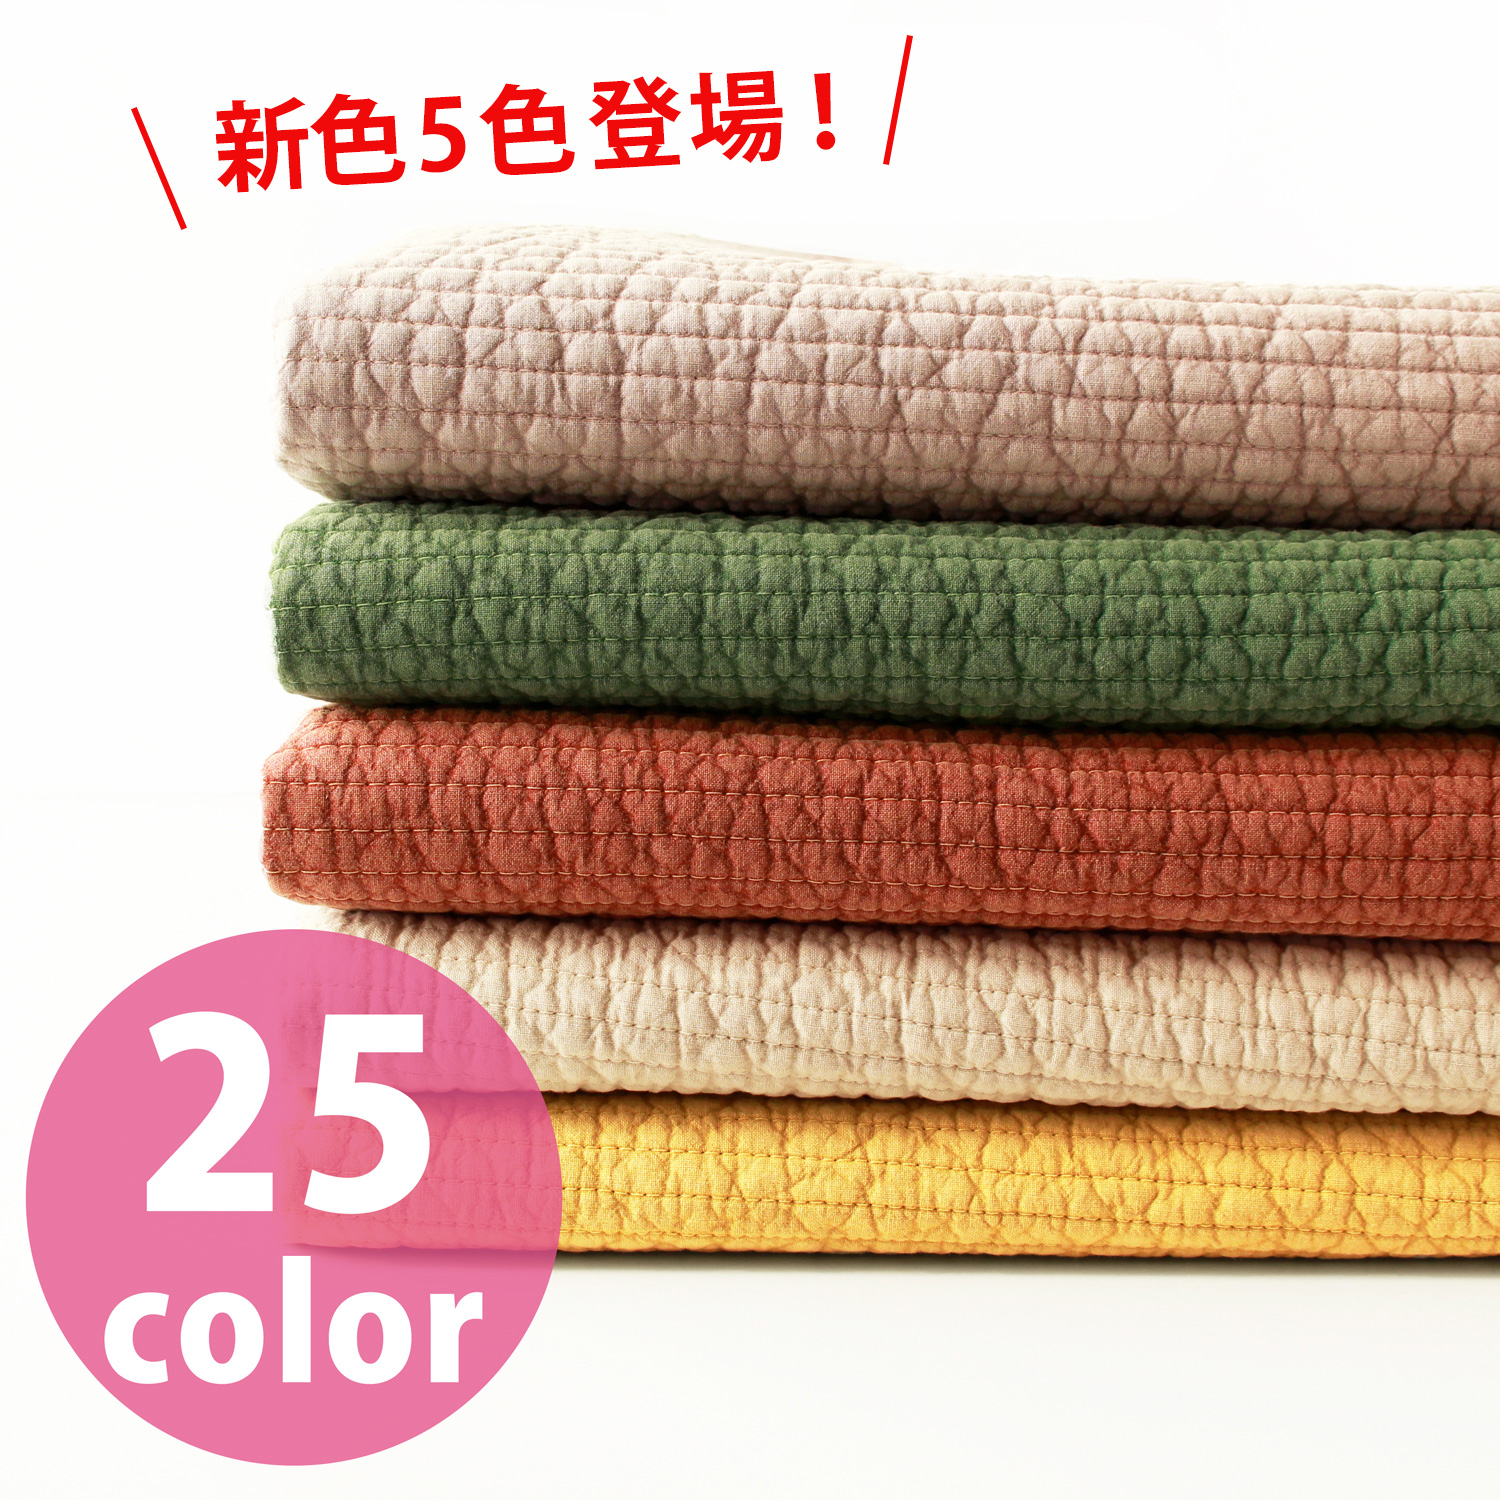 【一部予約】■NBY307R nubi ヌビ 韓国伝統キルティング生地 巾7mm 約8m巻 (巻)